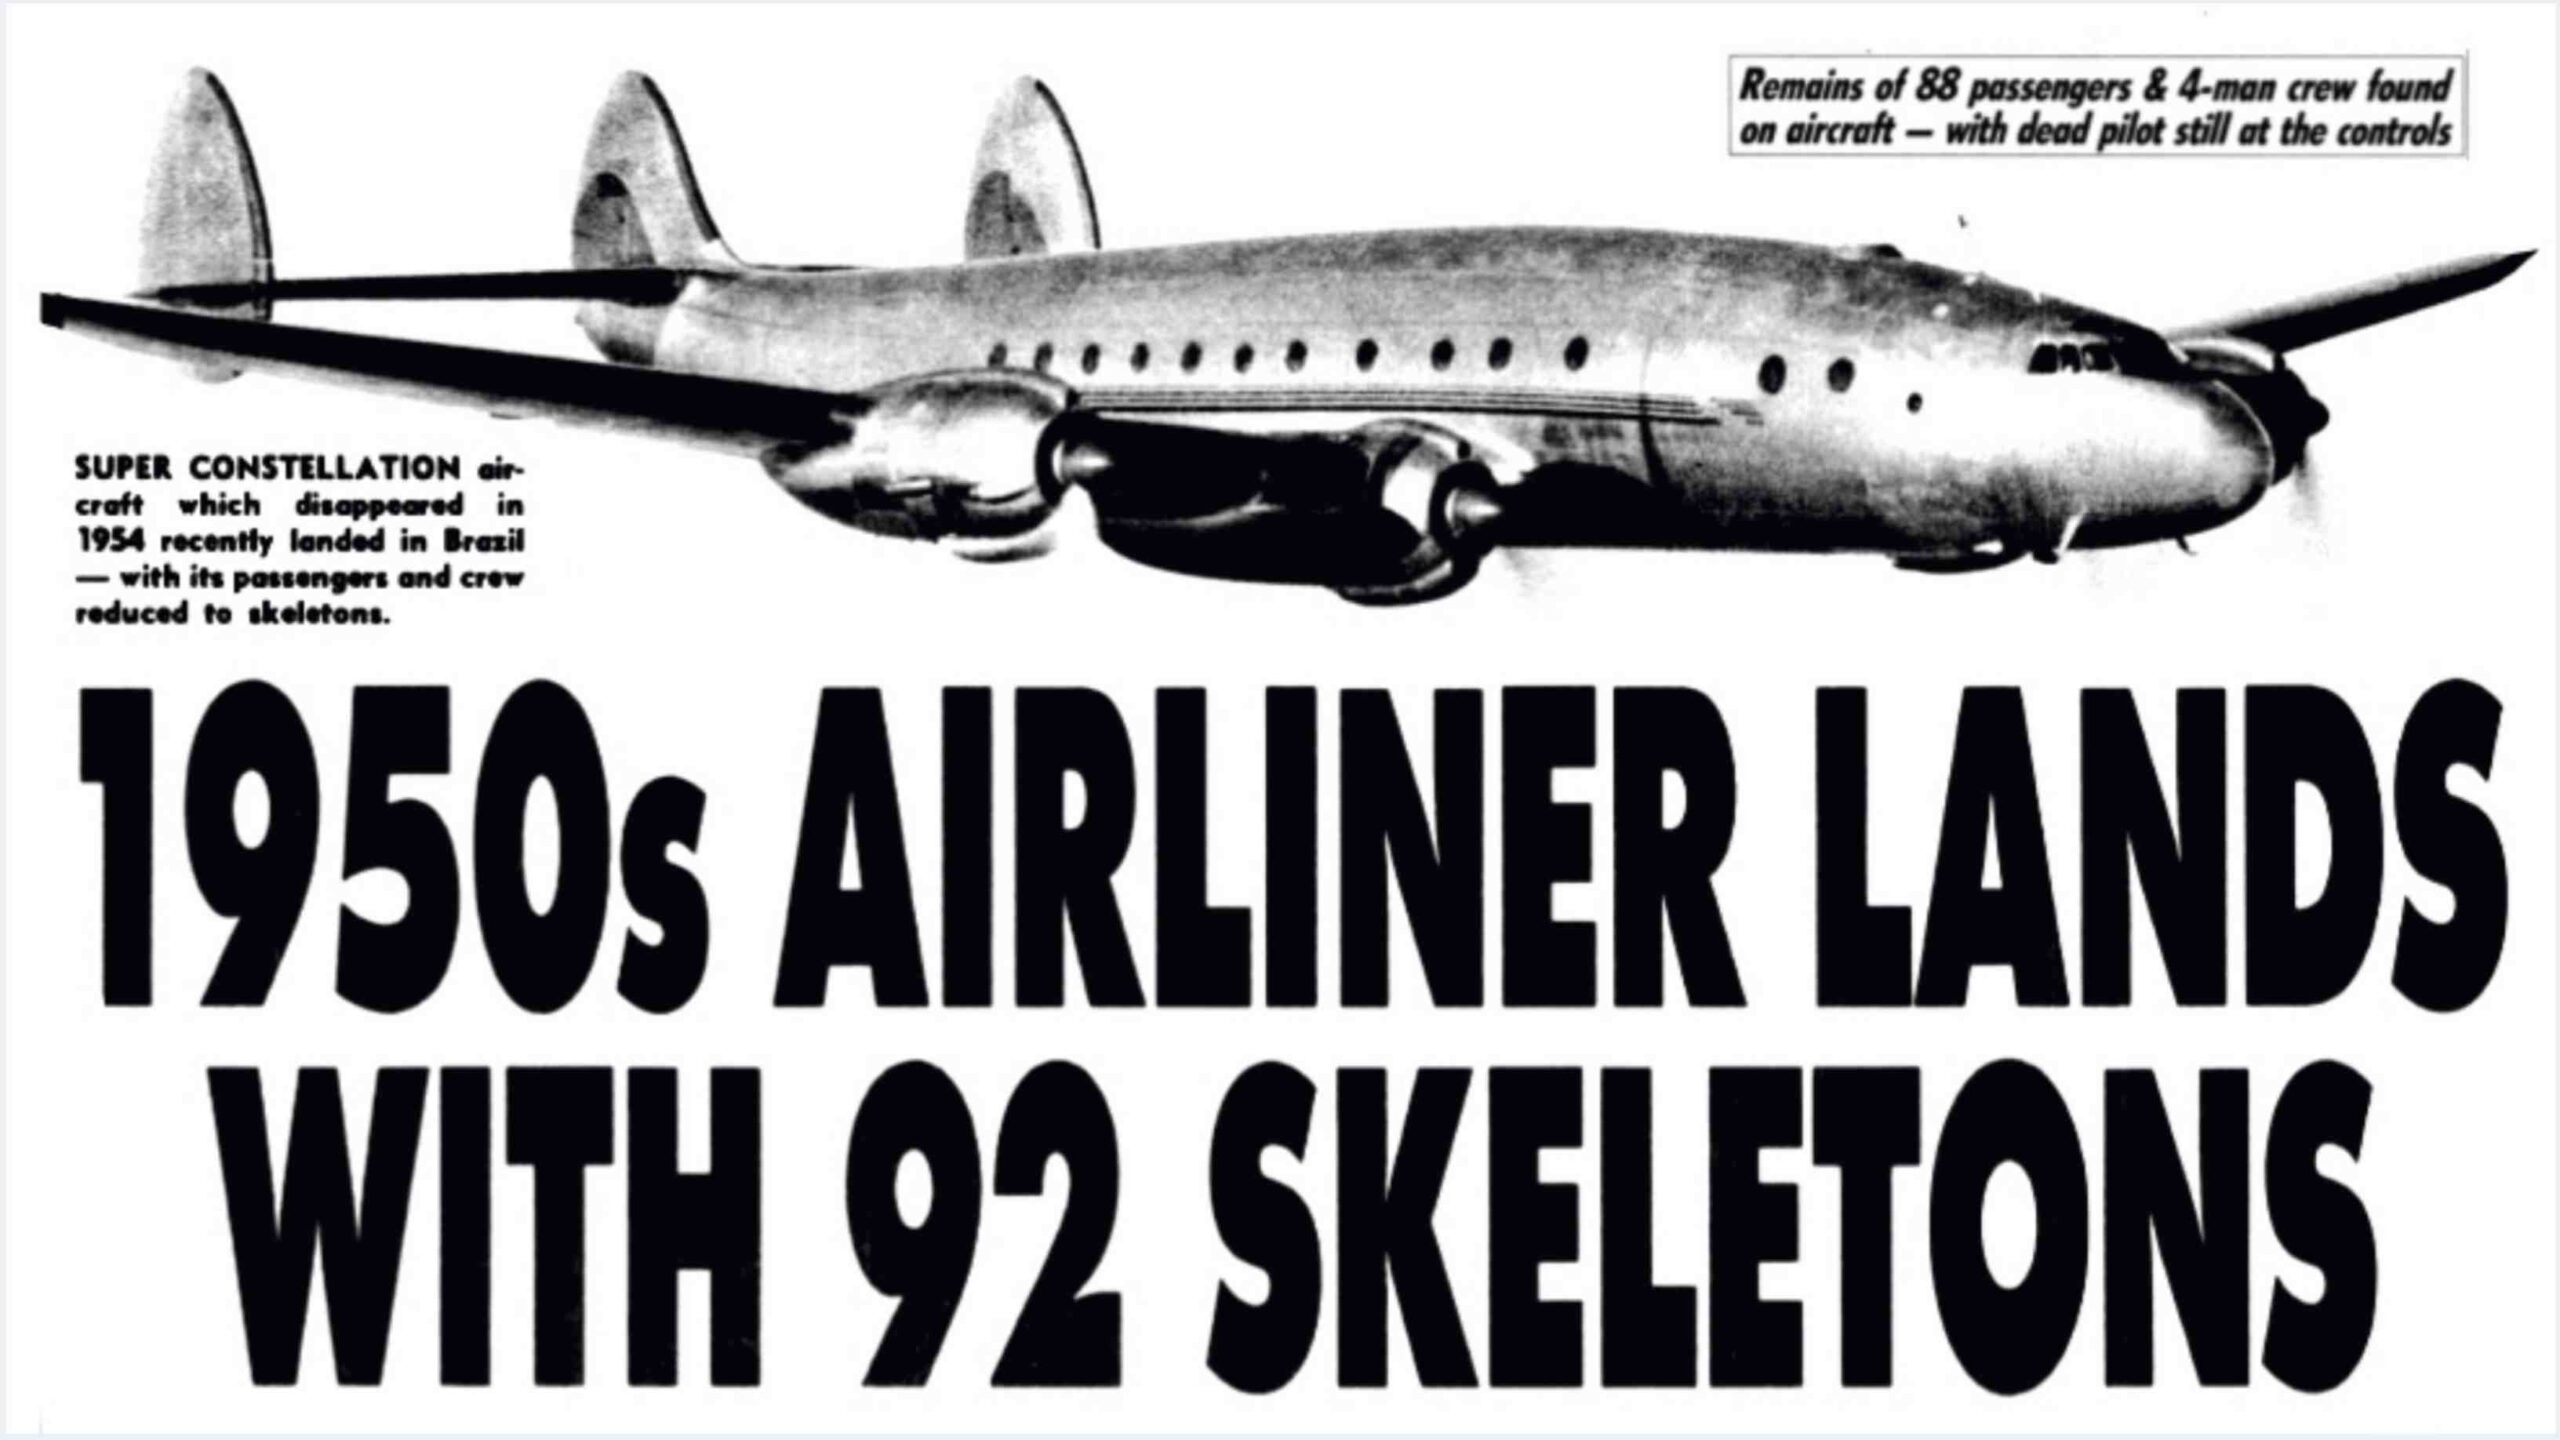 Chuyến bay Santiago 513: Chiếc máy bay mất tích hạ cánh sau 35 năm với 92 bộ xương trên khoang! 2